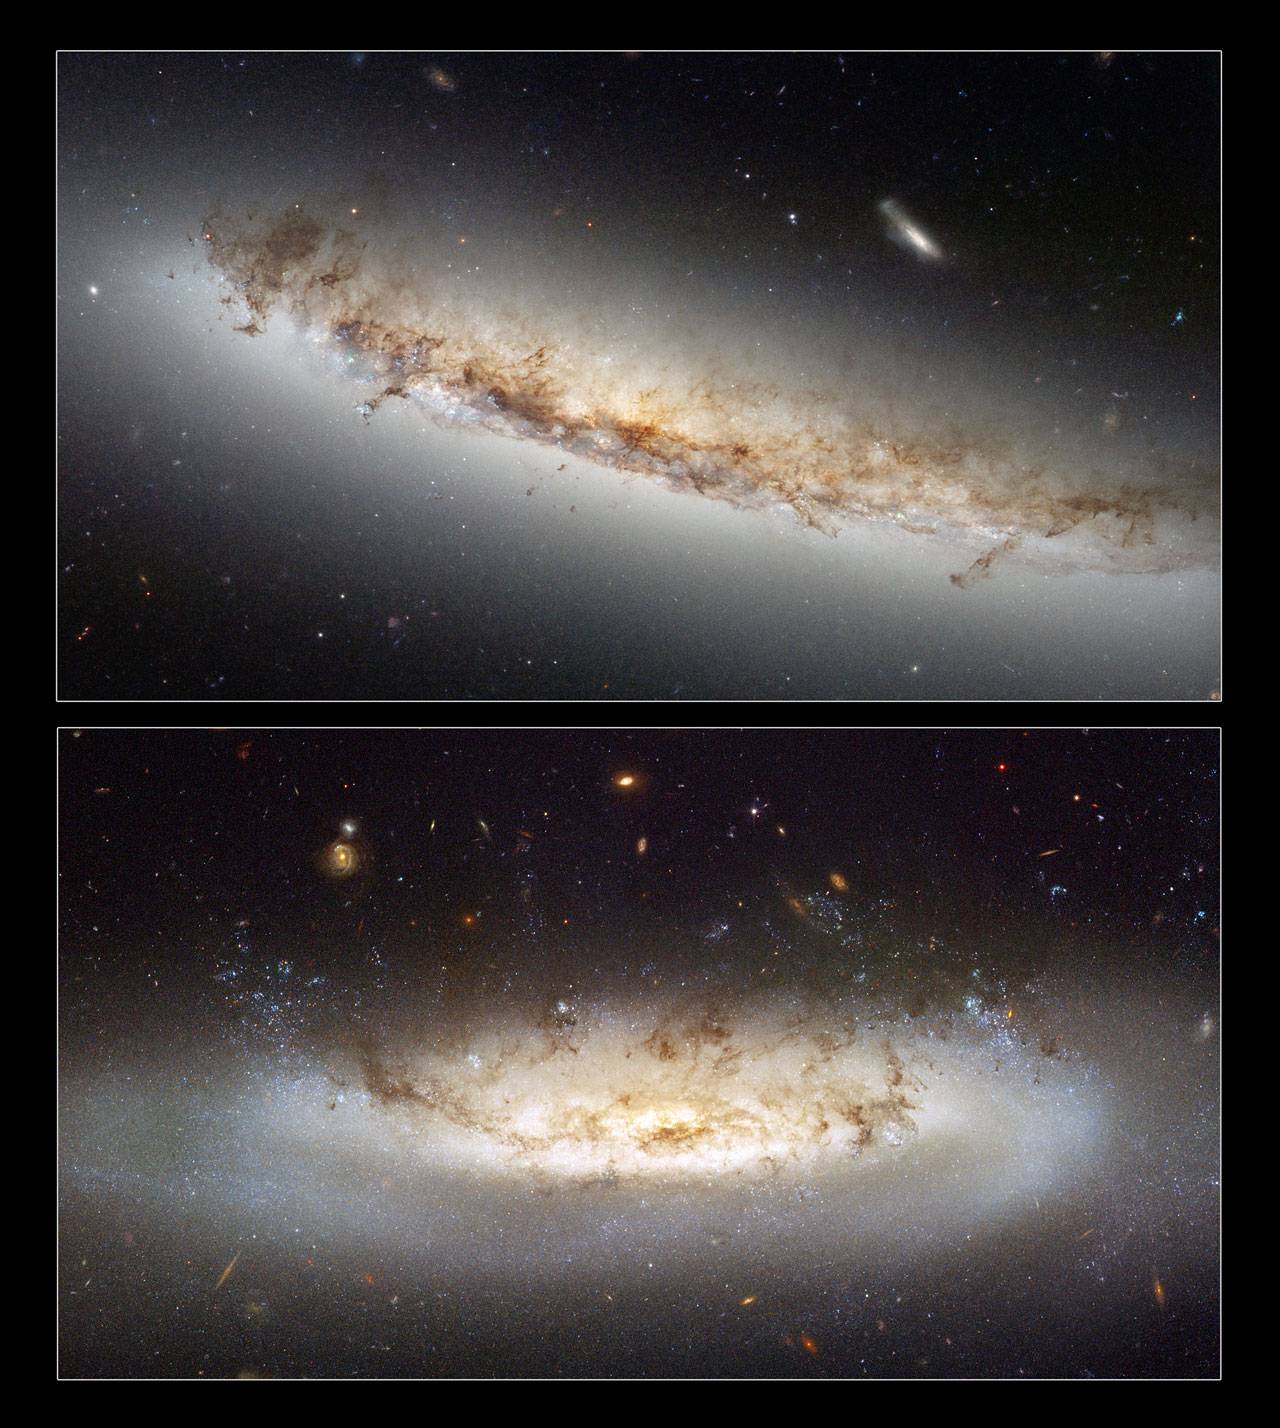 El Hubble permite observar un complejo fenómeno astronómico